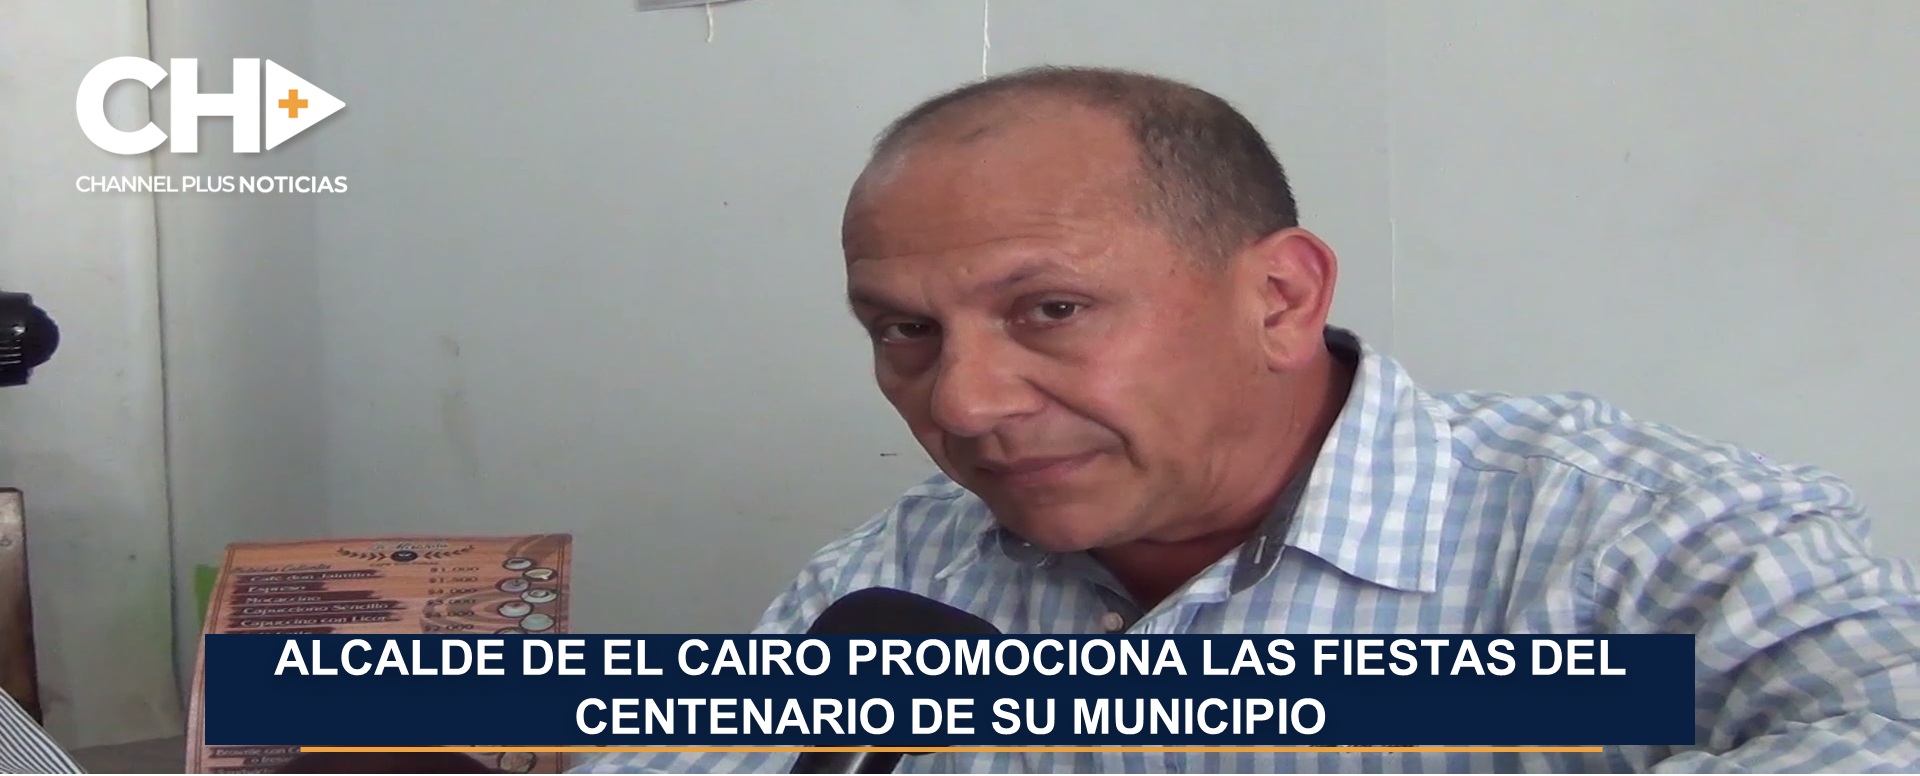 ALCALDE DE EL CAIRO PROMOCIONA LAS FIESTAS DEL CENTENARIO DE SU MUNICIPIO